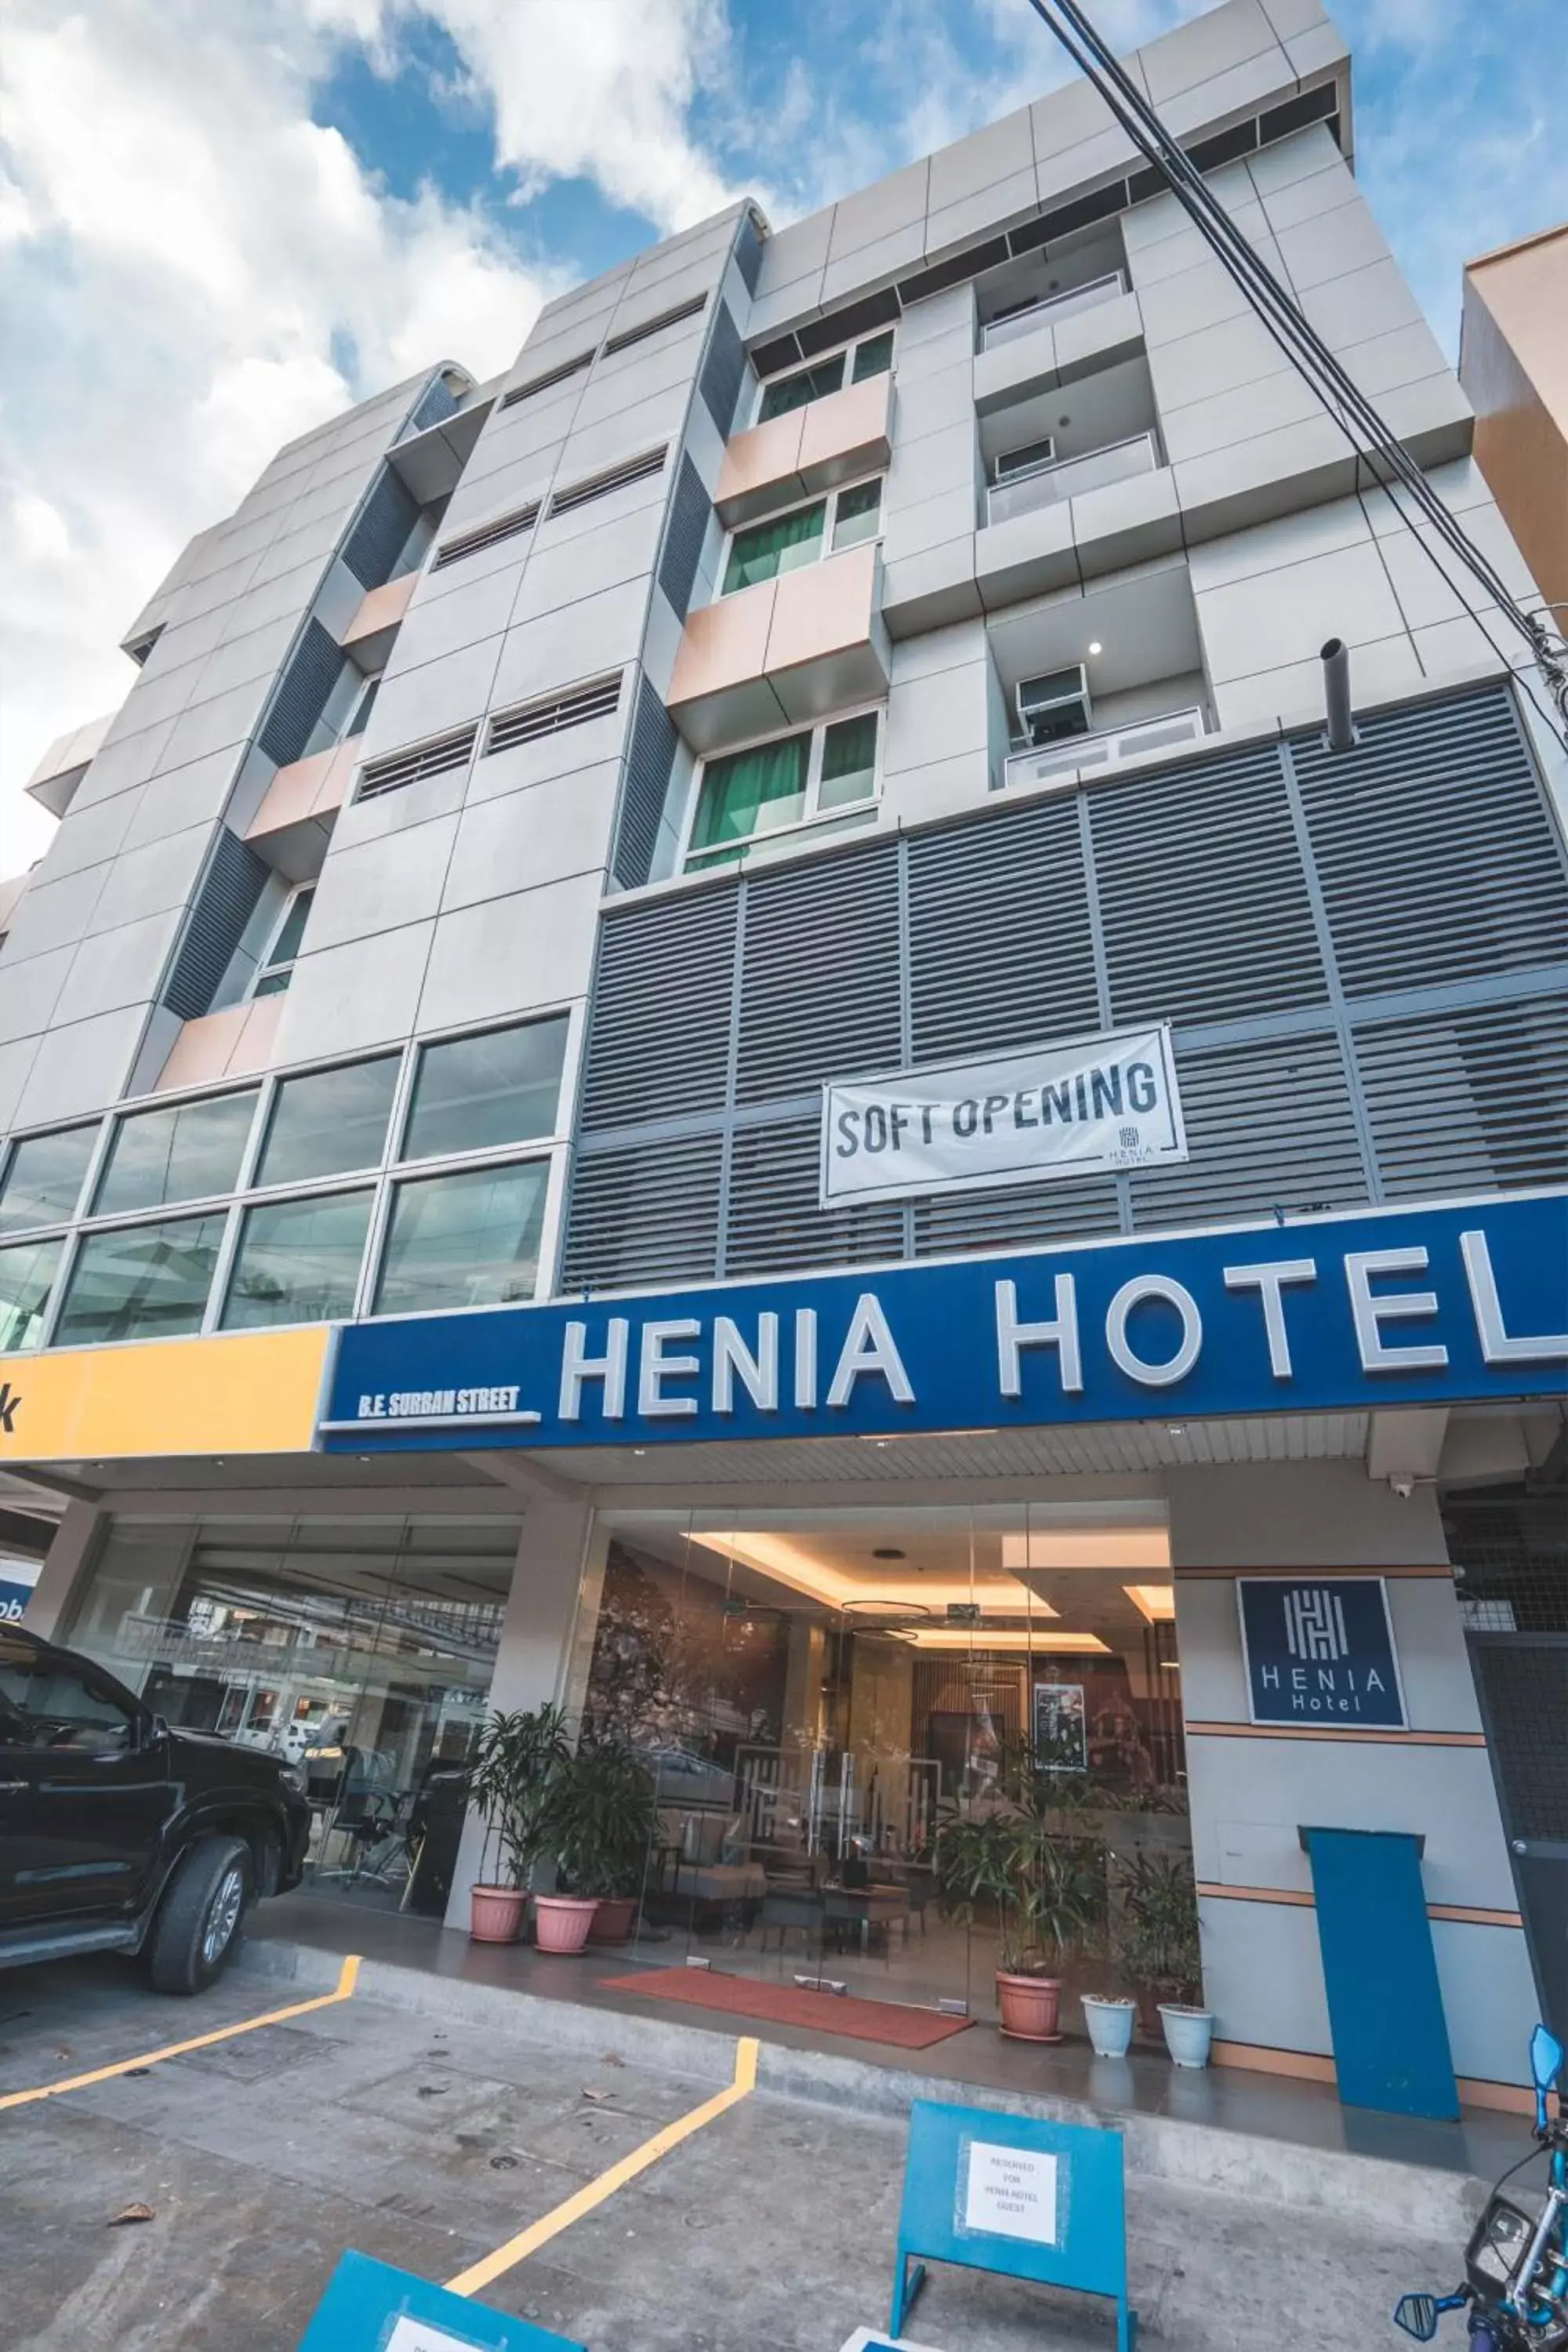 Property Building in Henia Hotel